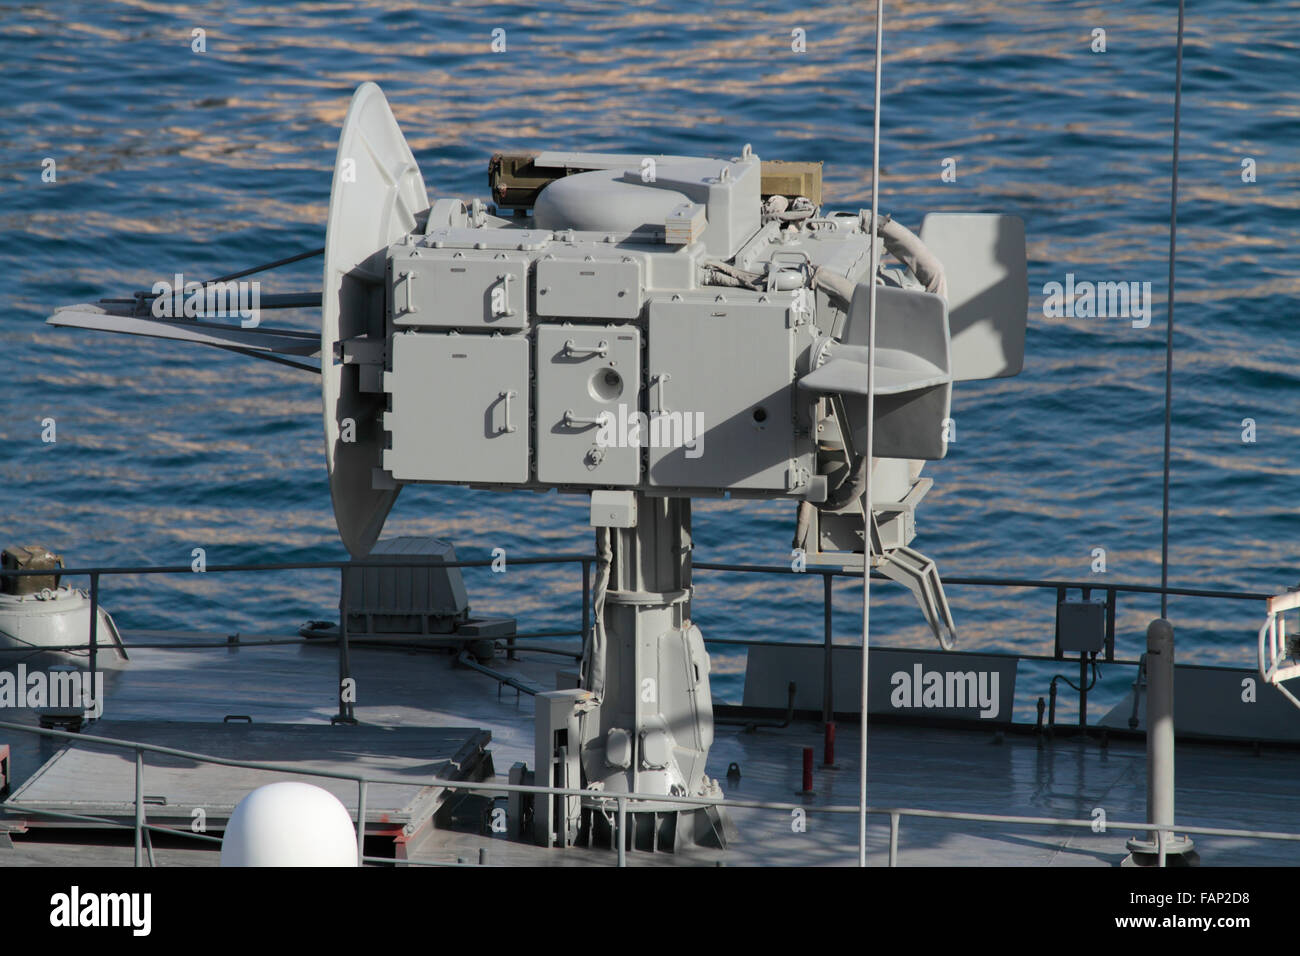 Il Kite strillano target tracking radar sul bordo della marina russa frigate Yaroslav Mudry Foto Stock